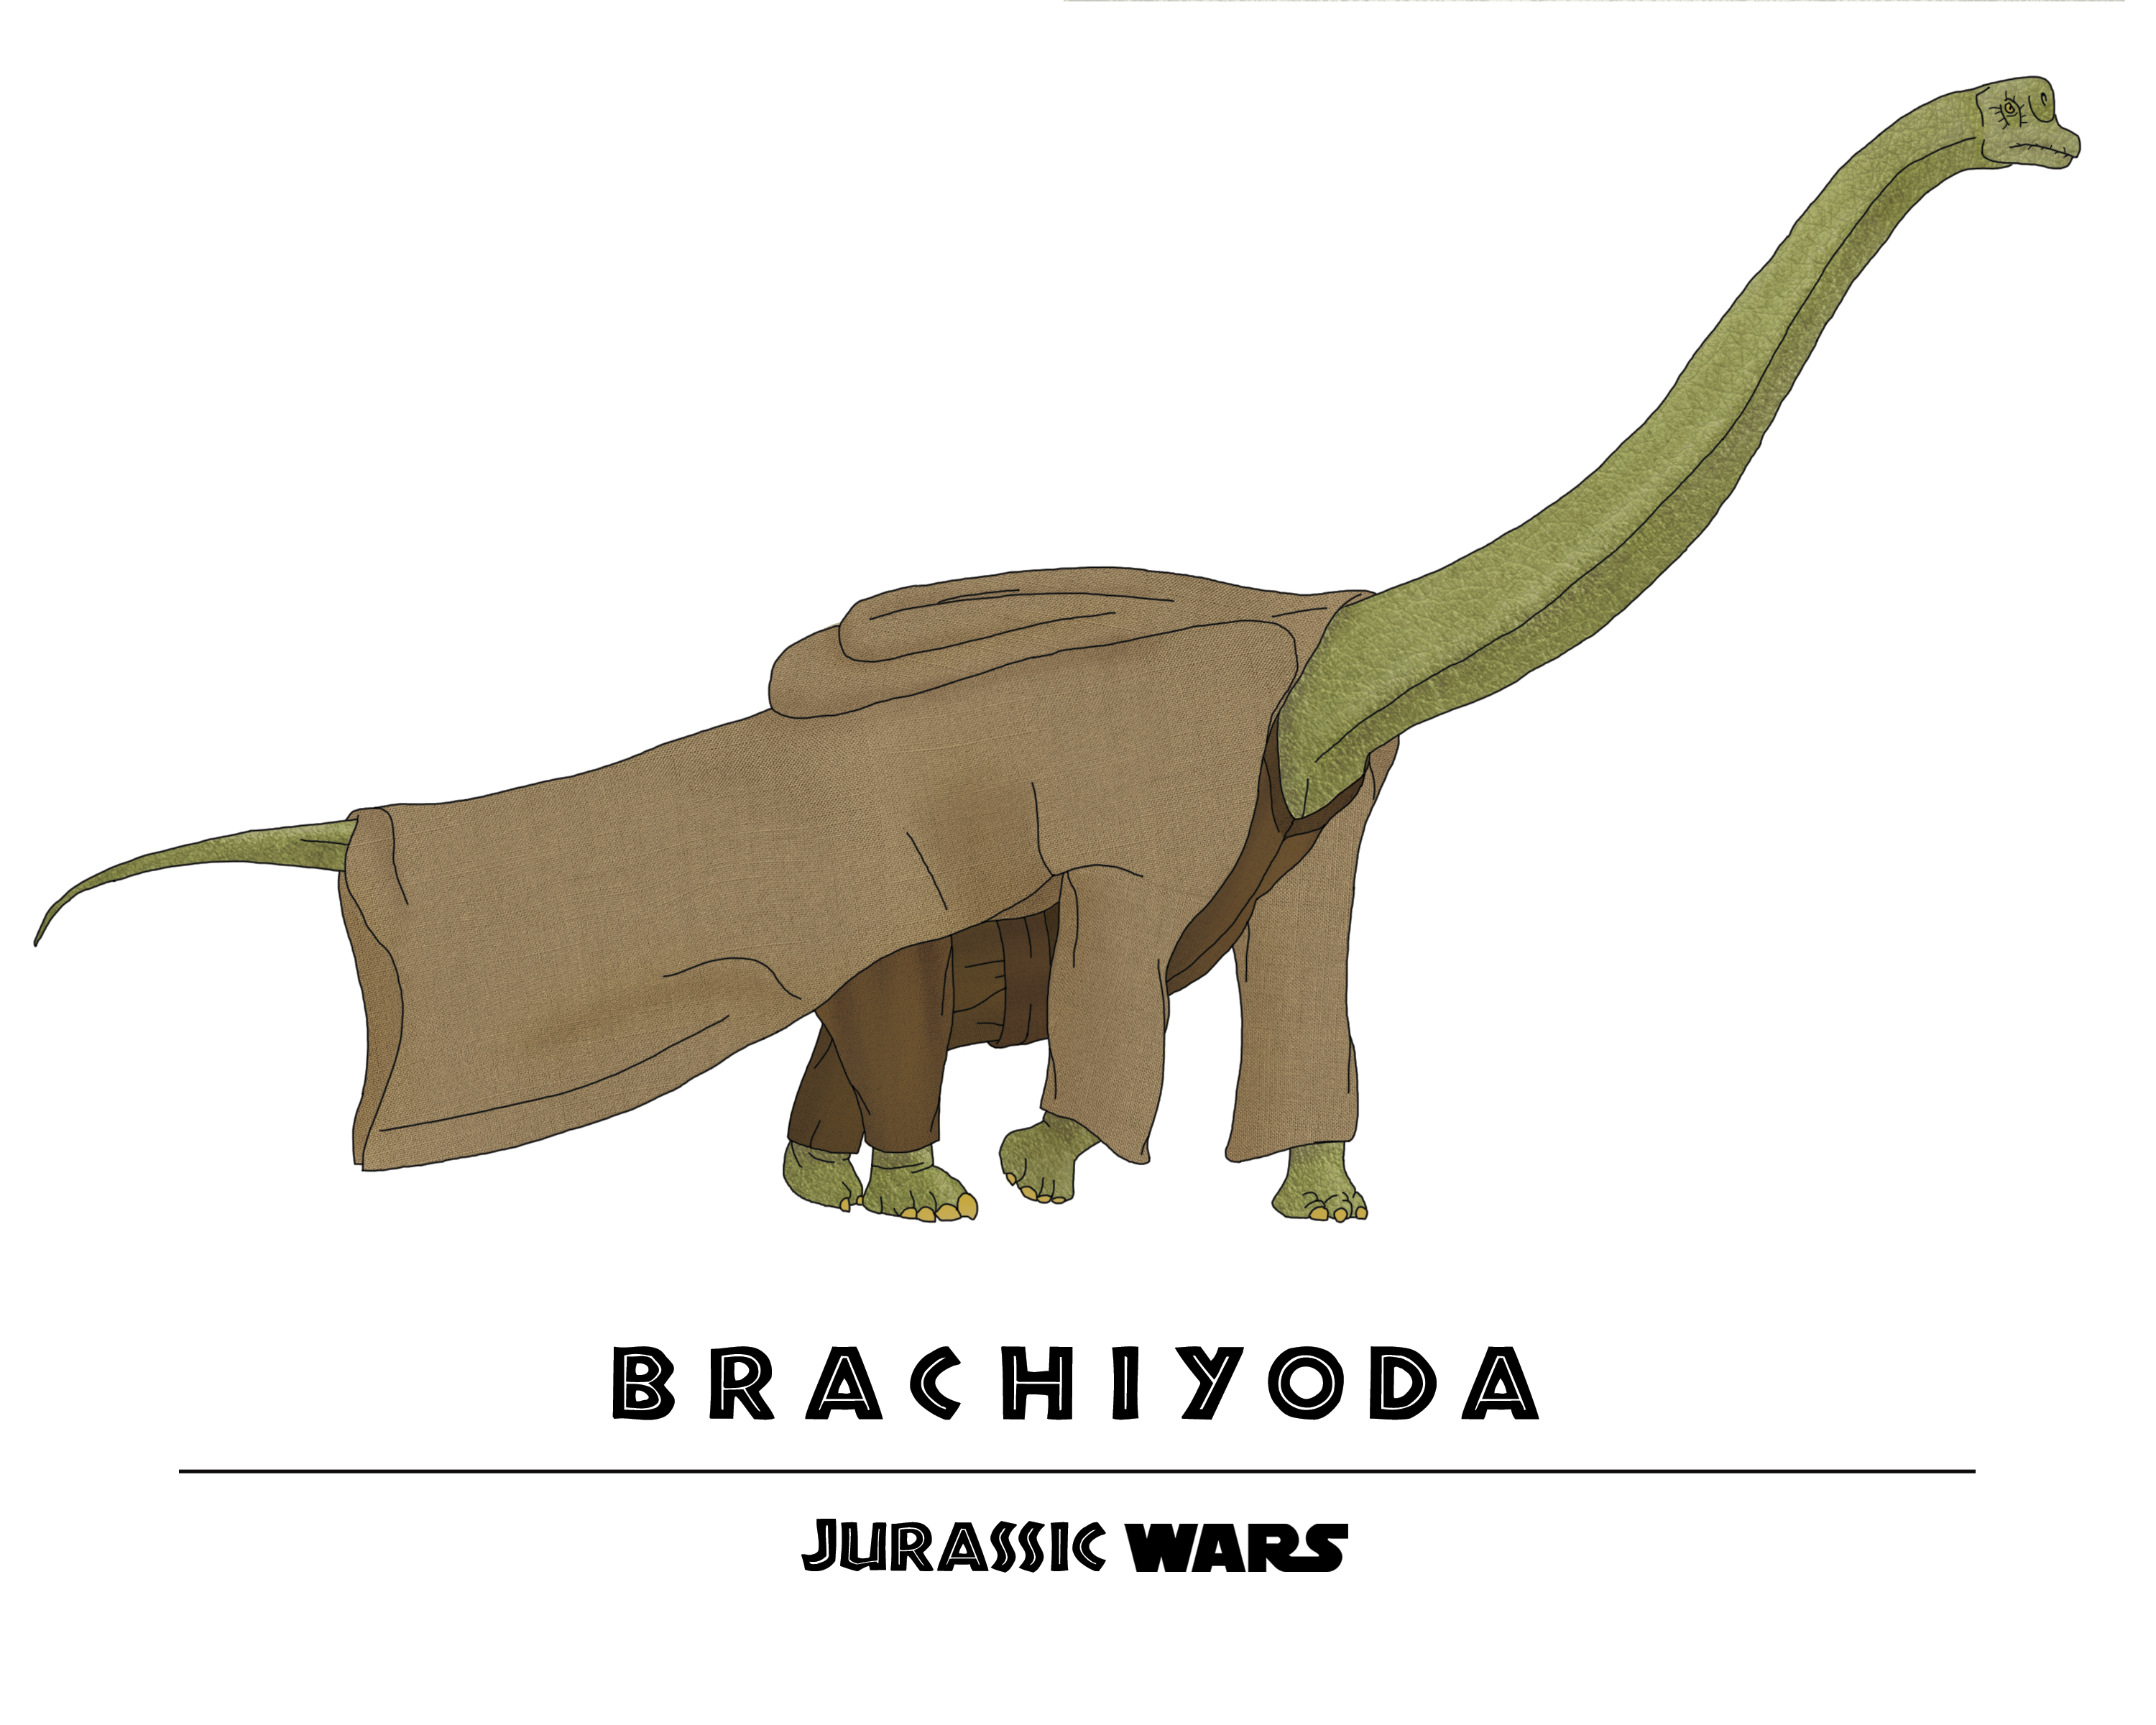 Jurassic-Wars-Brachiyoda.jpg